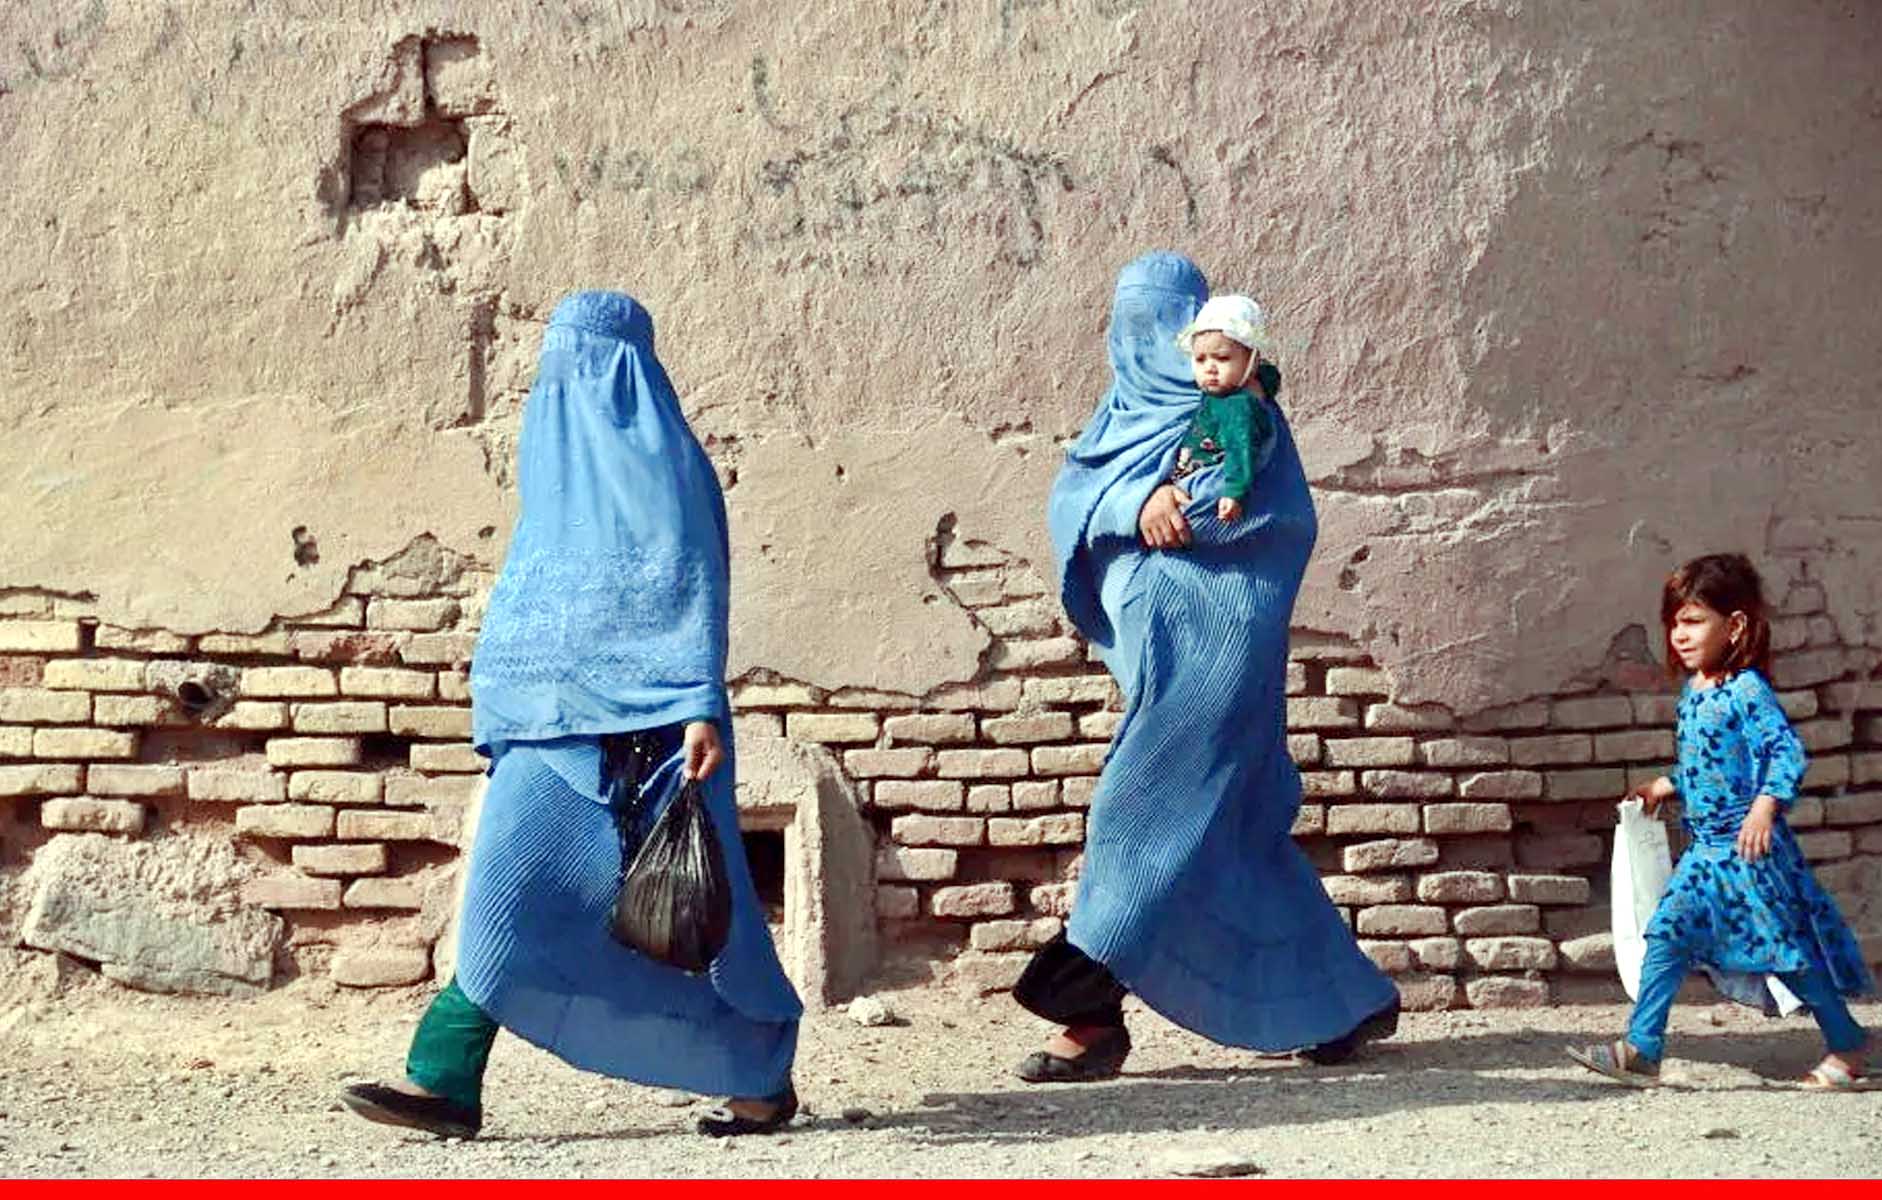 अफगान सेक्स वर्कर्स की लिस्ट बना रहा तालिबान, पोर्न साइट्स खंगाल रहे लड़ाके